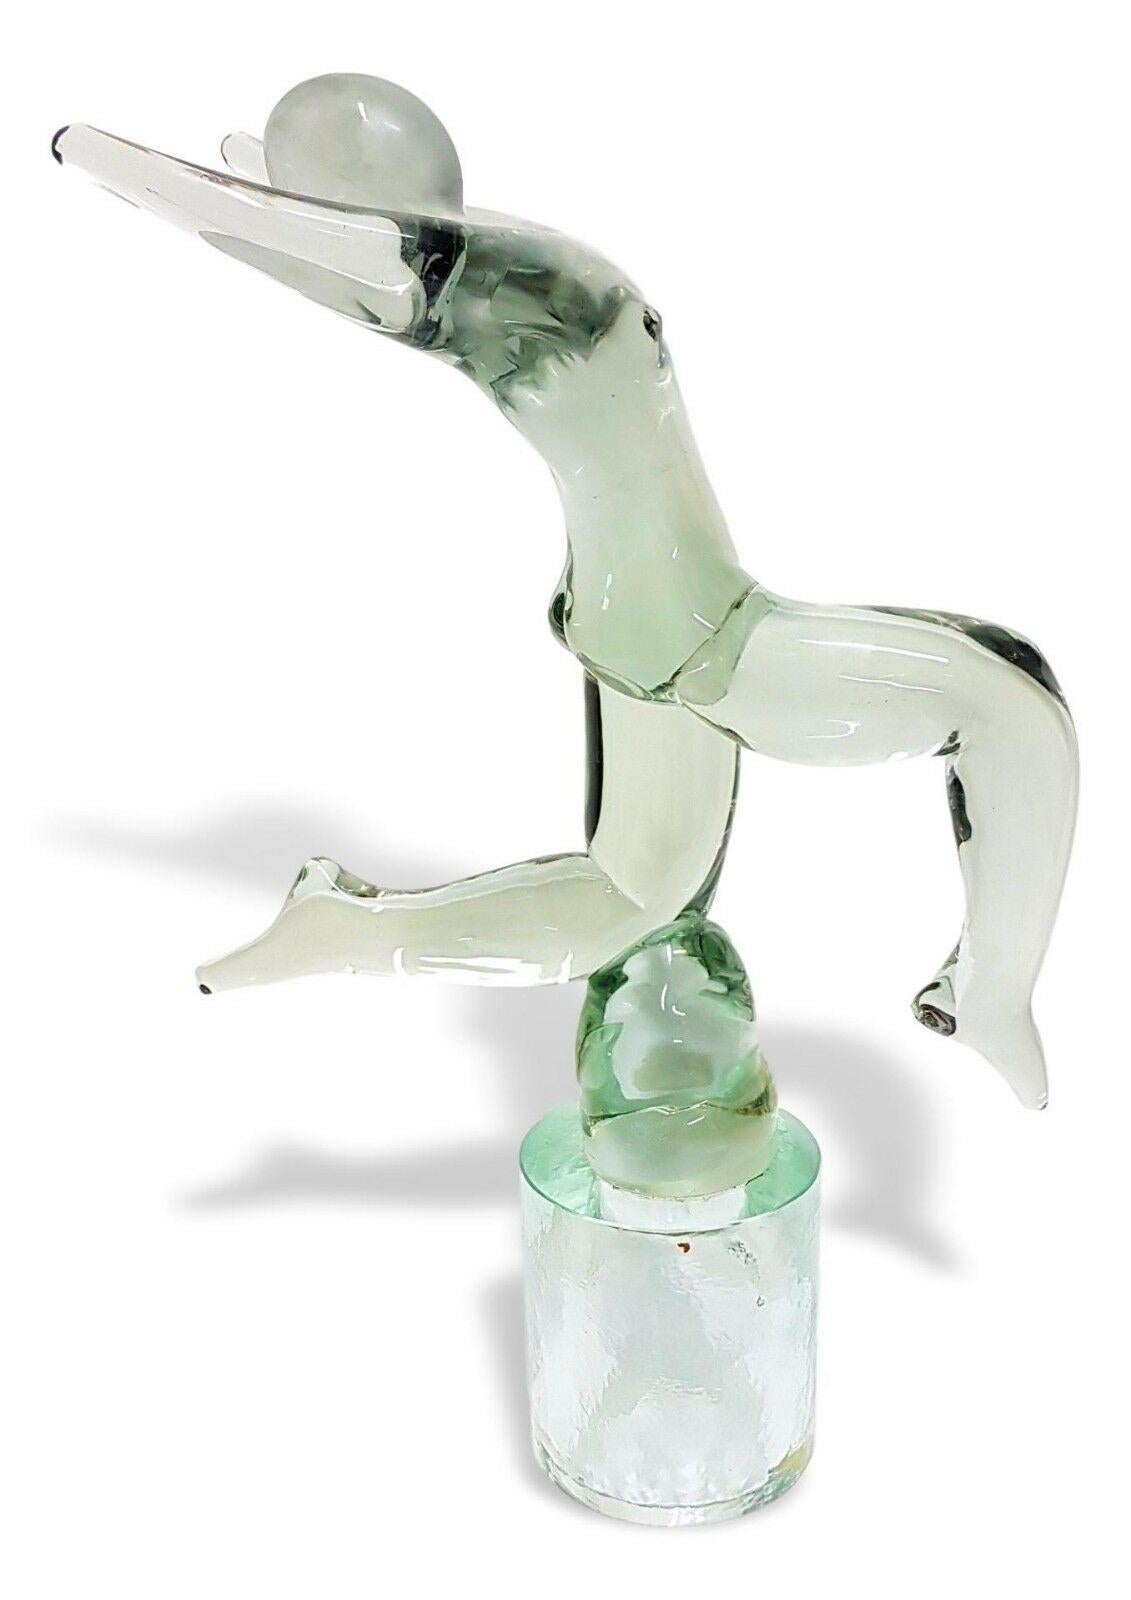 Merveilleuse sculpture en verre de Murano des années 70, conçue par Renato Anatrà pour Venier, représentant un athlète.

Il mesure 45 cm de hauteur par 30 cm de largeur, dans de parfaites conditions de rangement, signé sous la base.